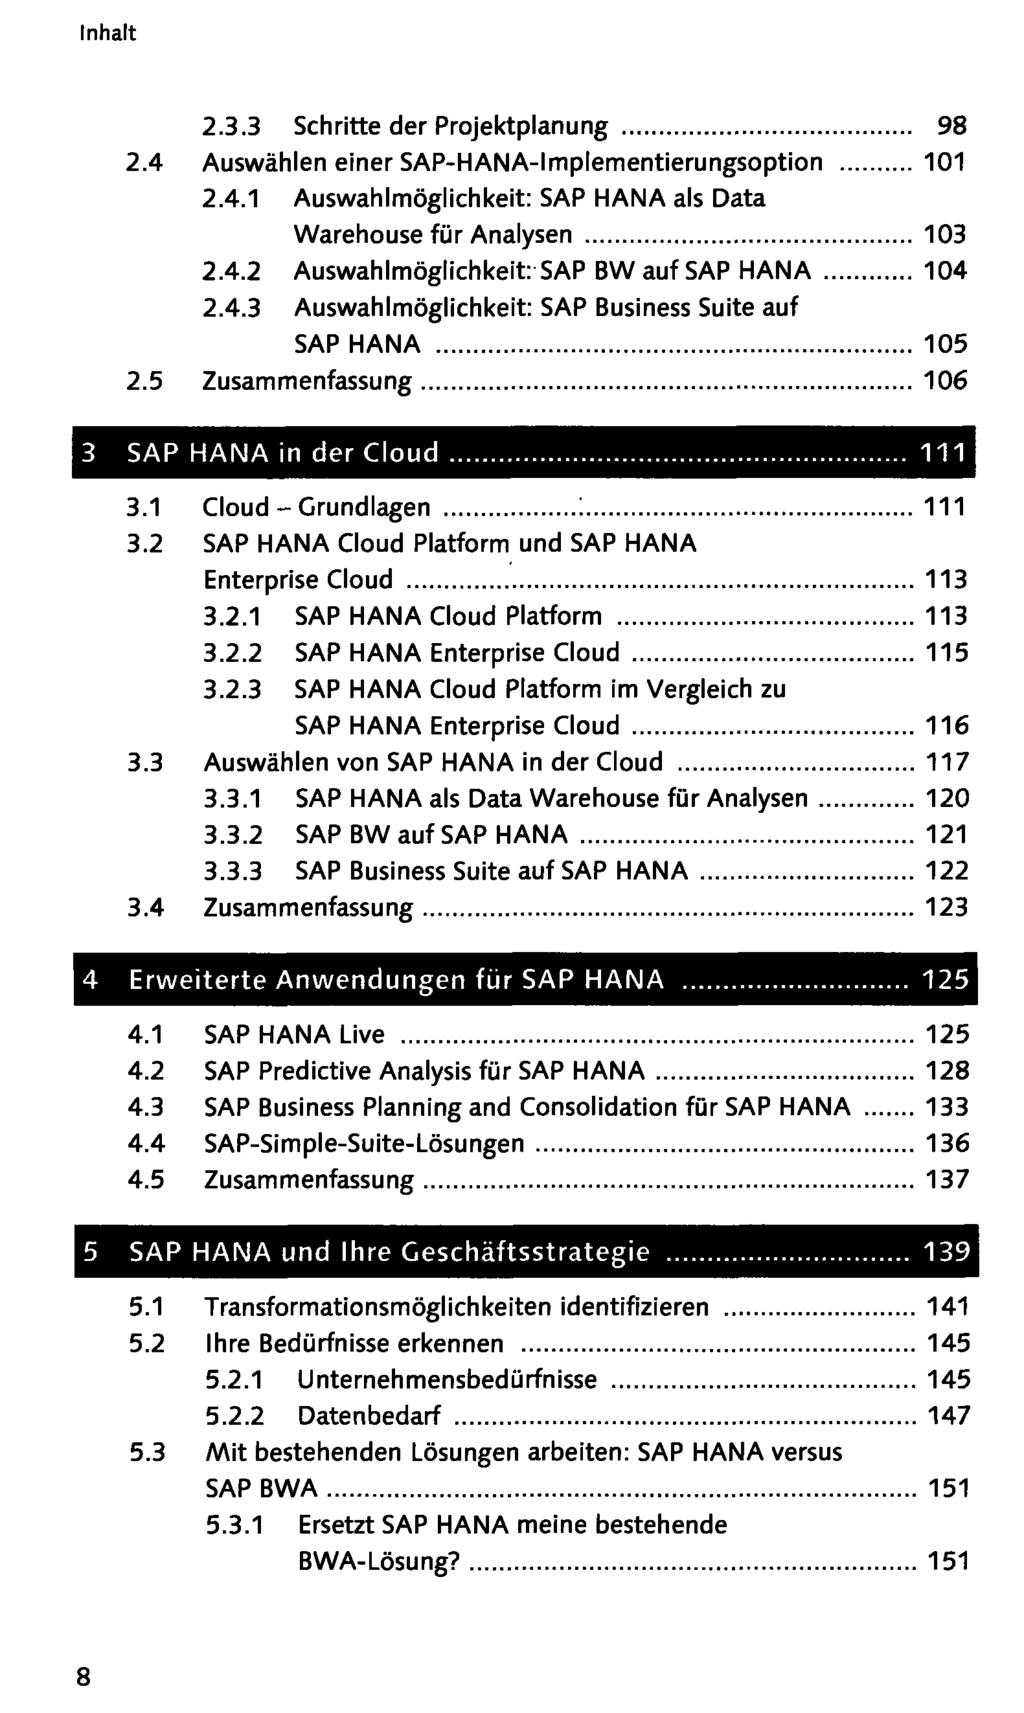 2.3.3 Schritte der Projektplanung 98 2.4 Auswählen einer SAP-HANA-Implementierungsoption 101 2.4.1 Auswahlmöglichkeit: SAP HANA als Data Warehouse für Analysen 103 2.4.2 Auswahlmöglichkeit: SAP BW auf SAP HANA 104 2.